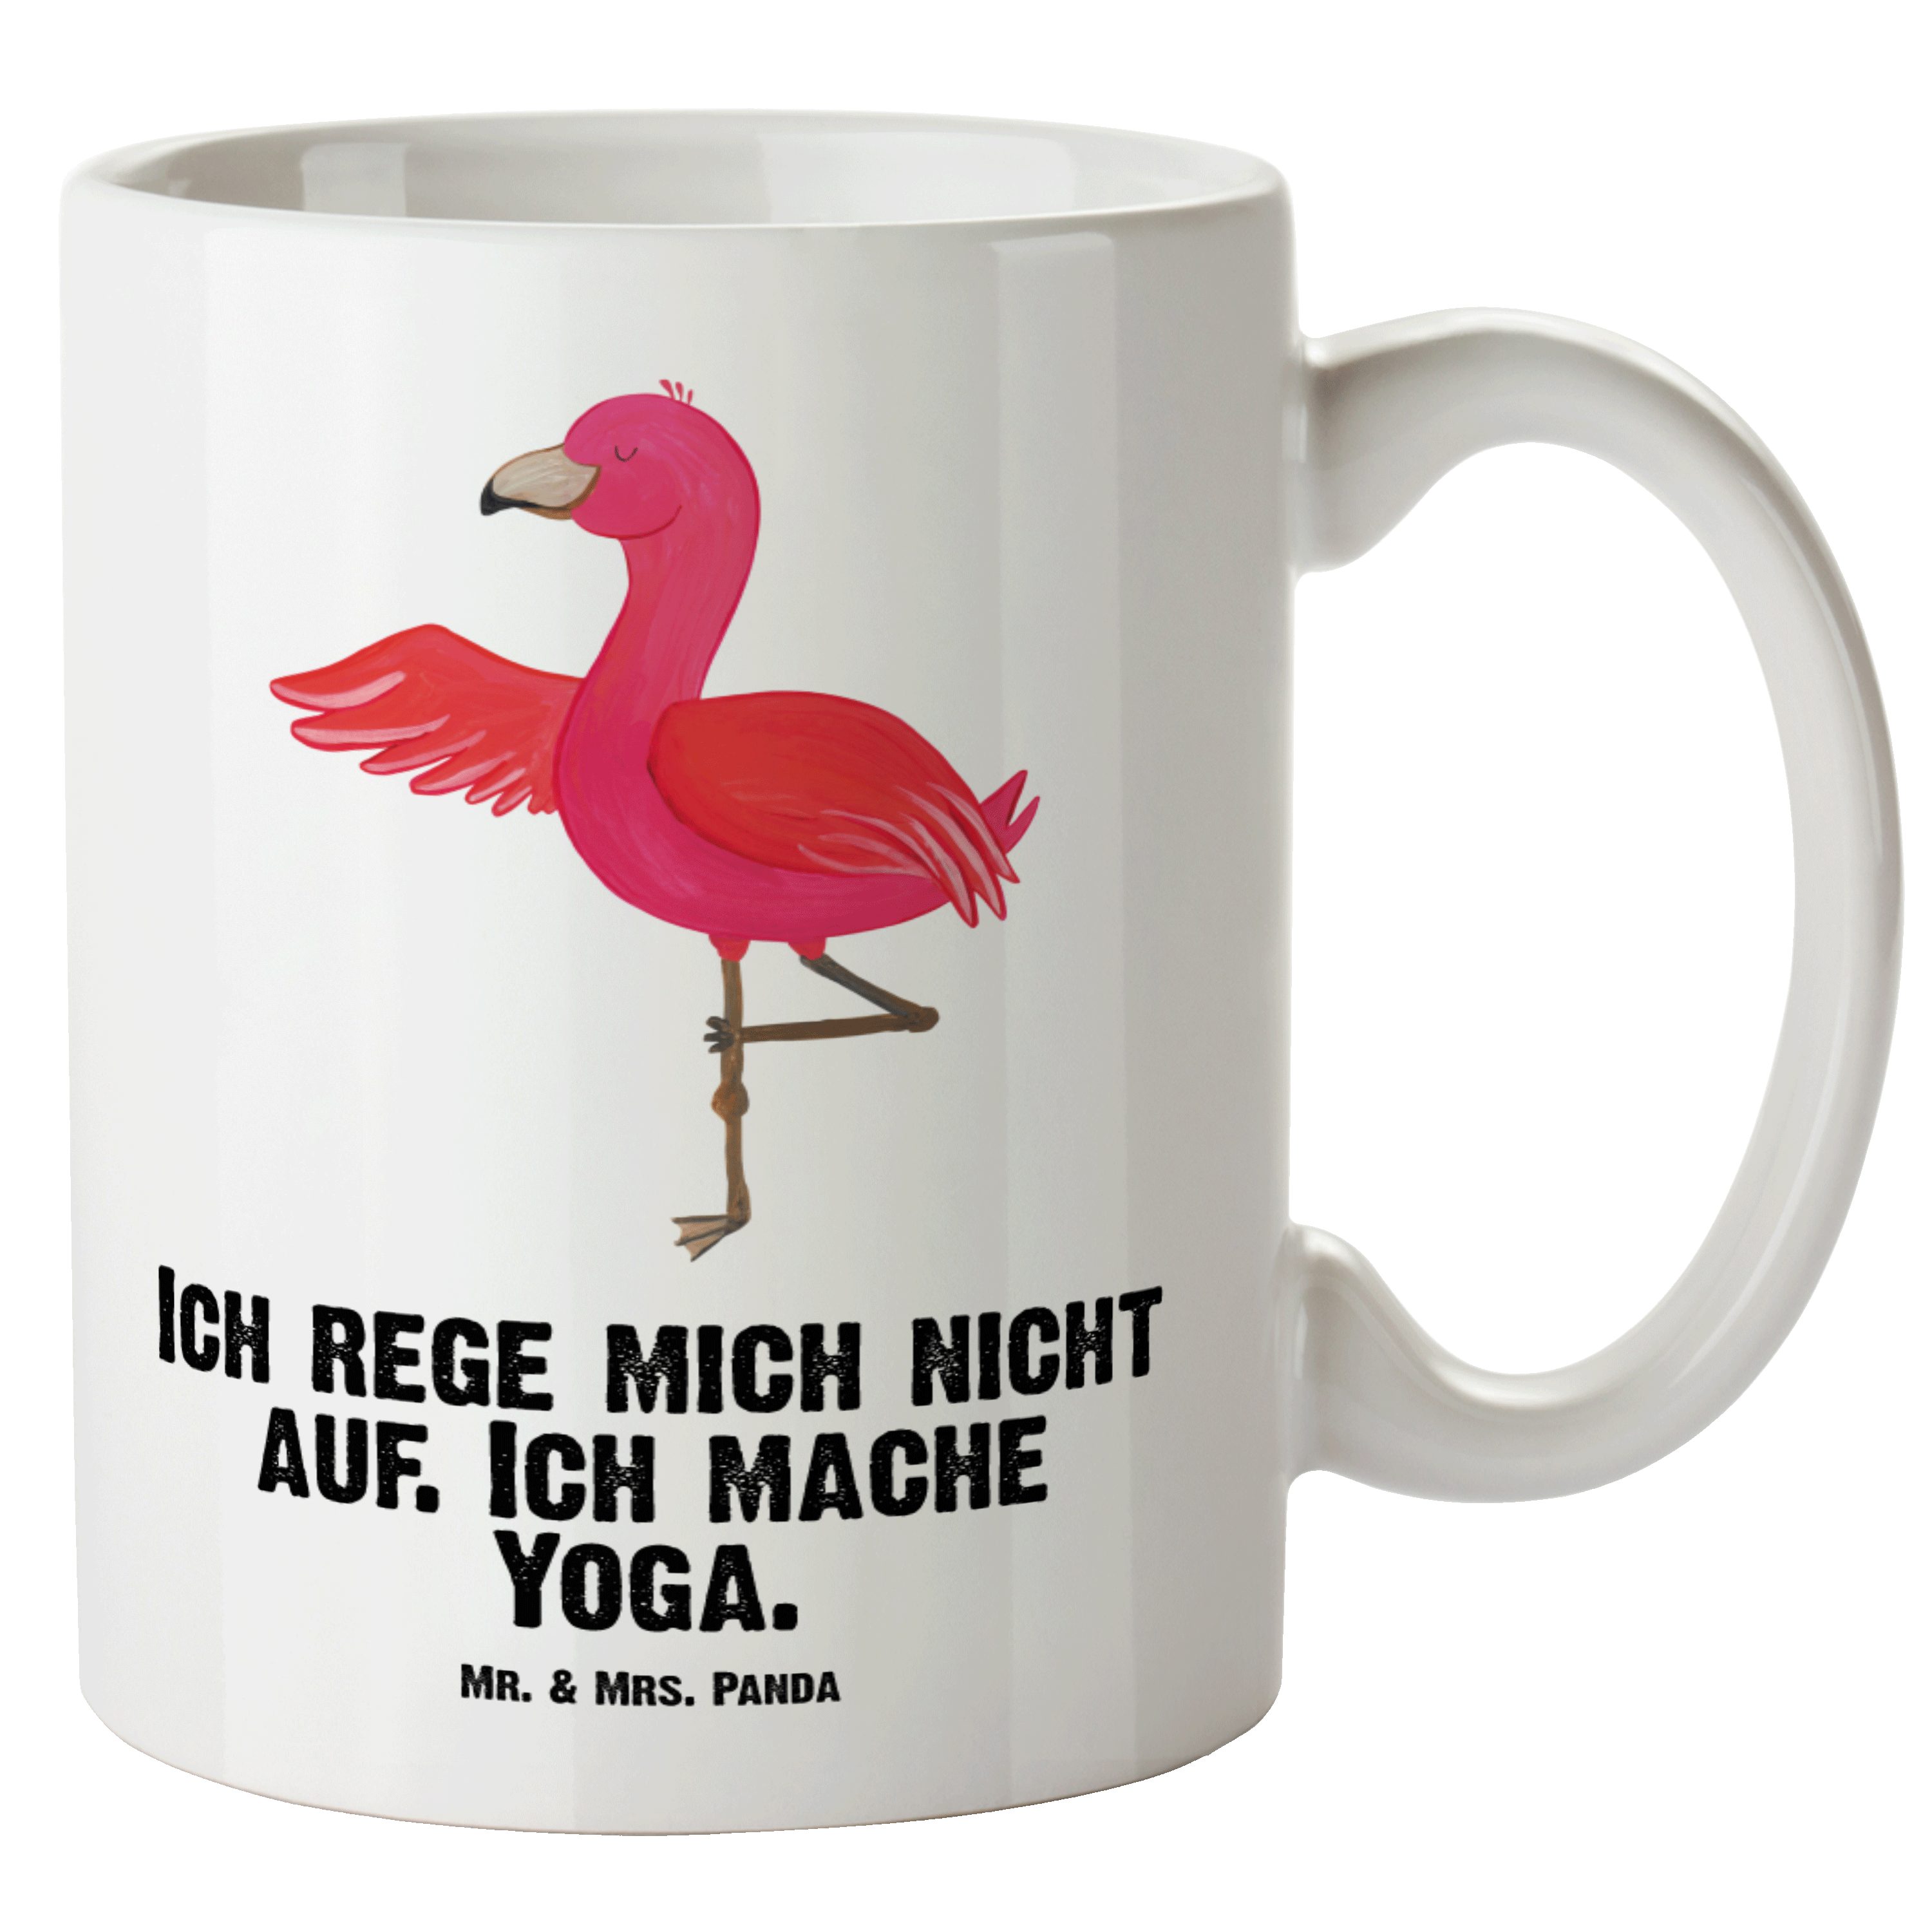 Mr. & Mrs. Panda Tasse Flamingo Yoga - Weiß - Geschenk, Achtsamkeit, Aufregen, Große Tasse, XL Tasse Keramik